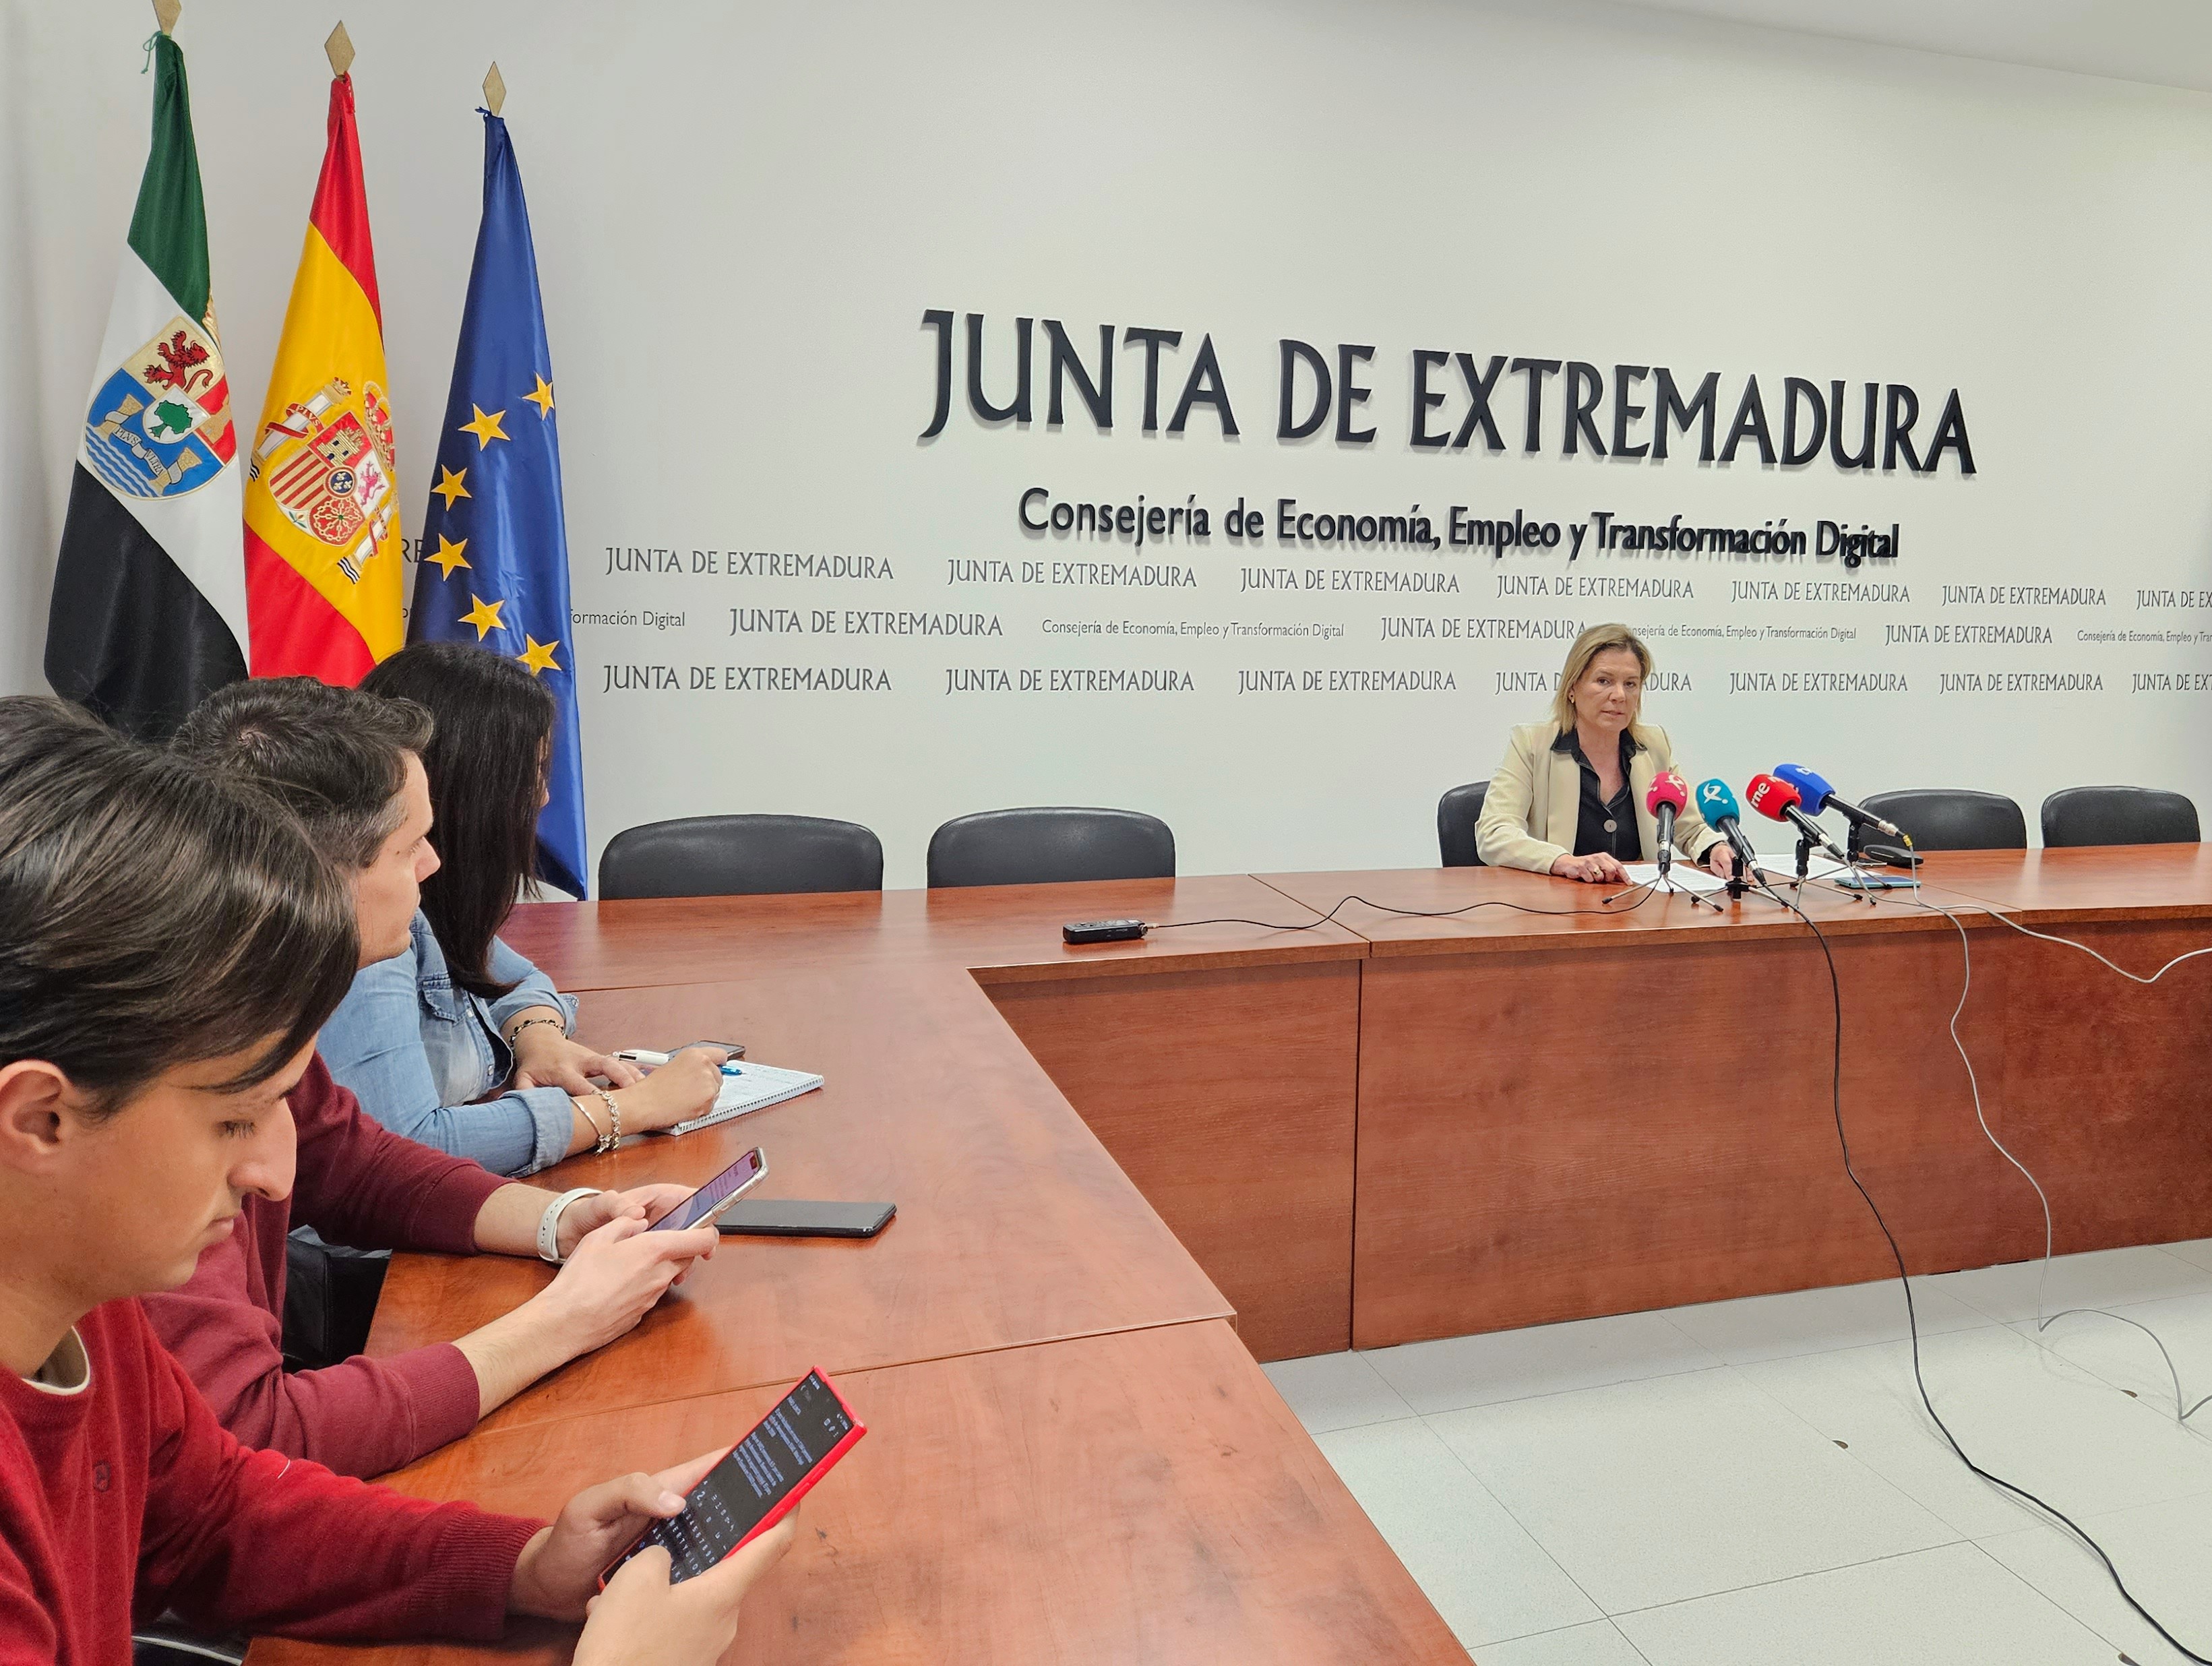 Image 0 of article El paro baja en Extremadura en 1.364 personas y sube la afiliación a la Seguridad Social con 1.416 nuevas altas